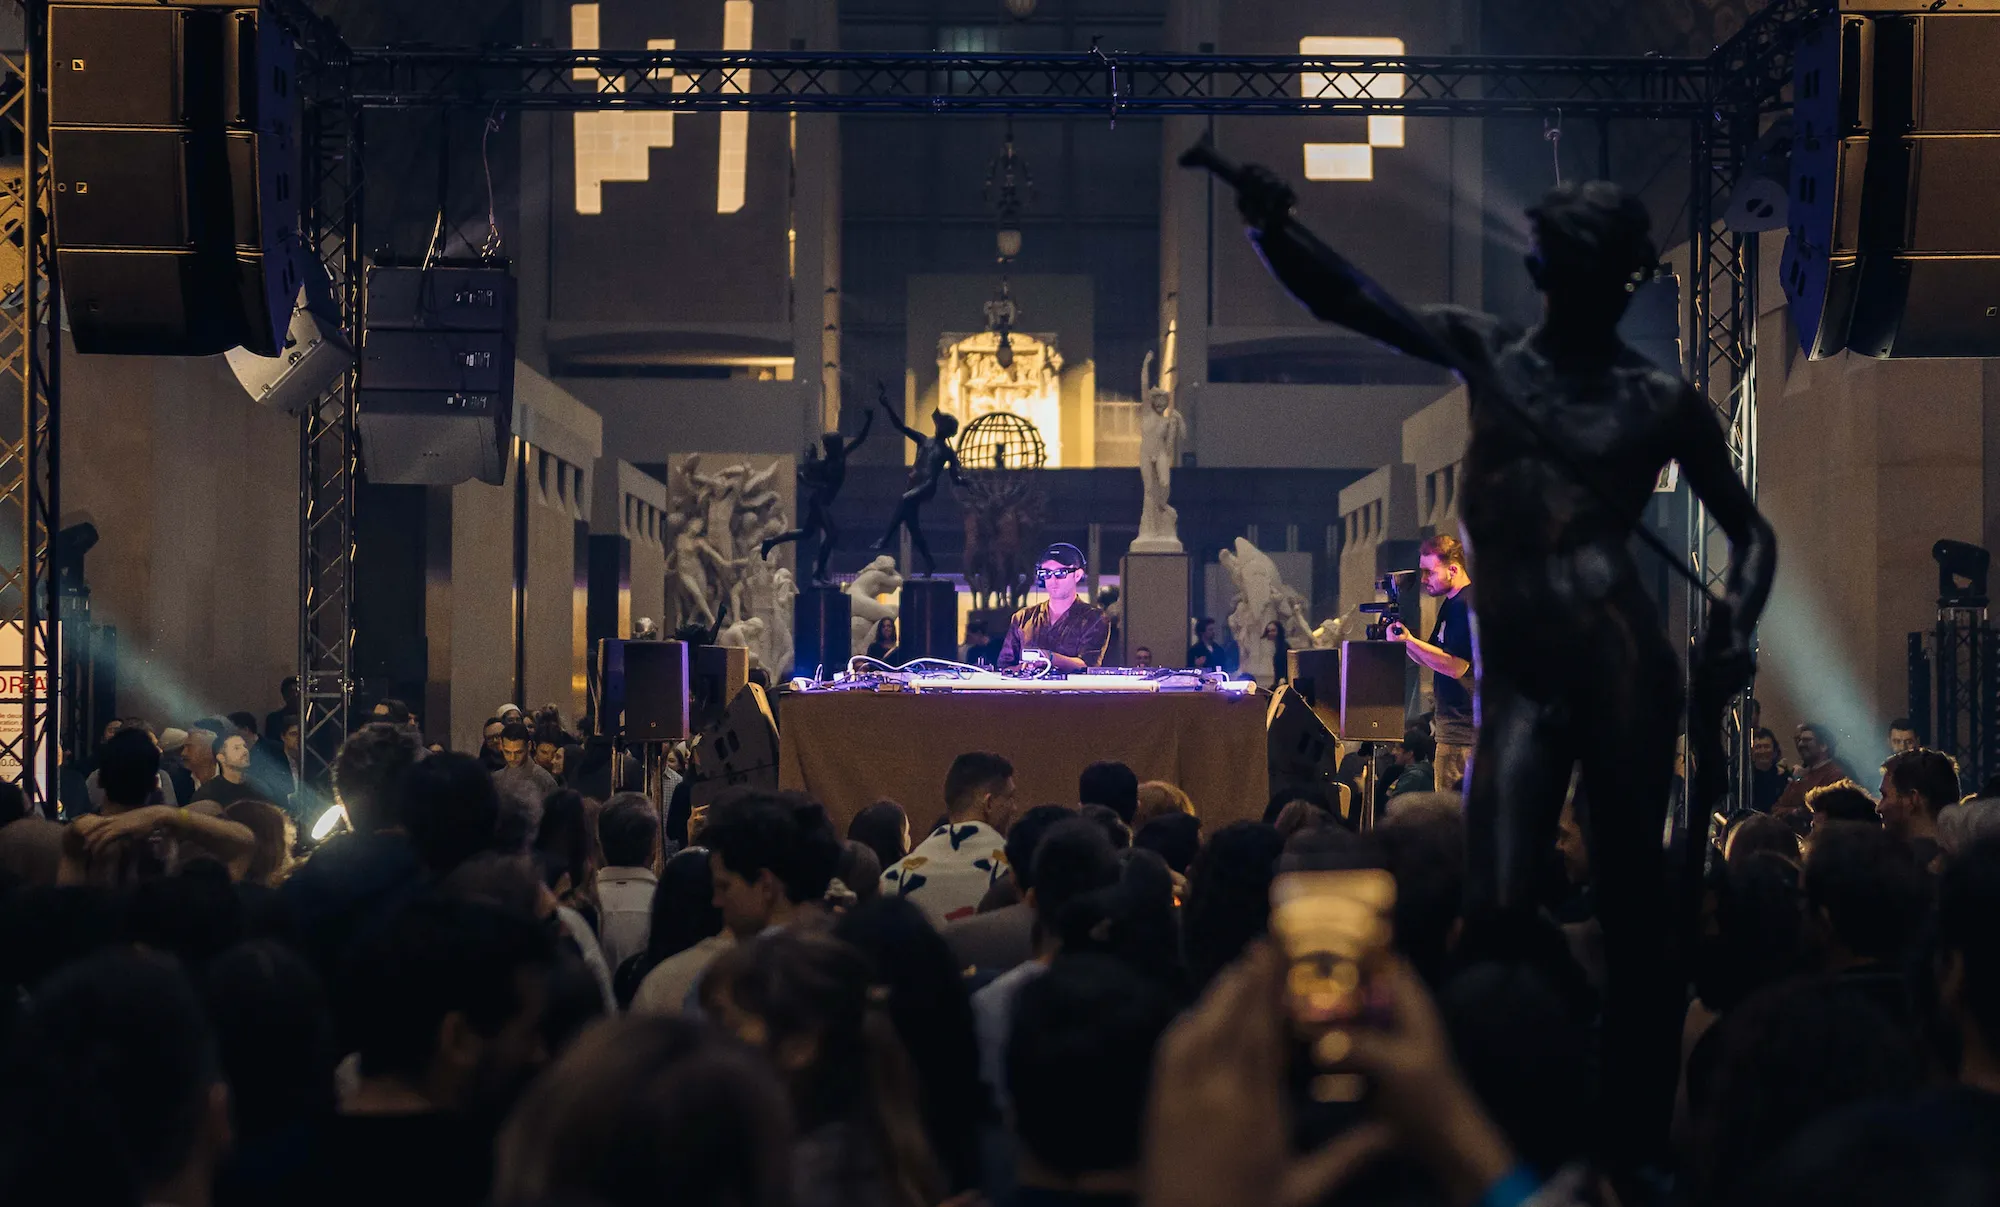 Agoria menampilkan set DJ pada hari Sabtu untuk merayakan peluncurannya